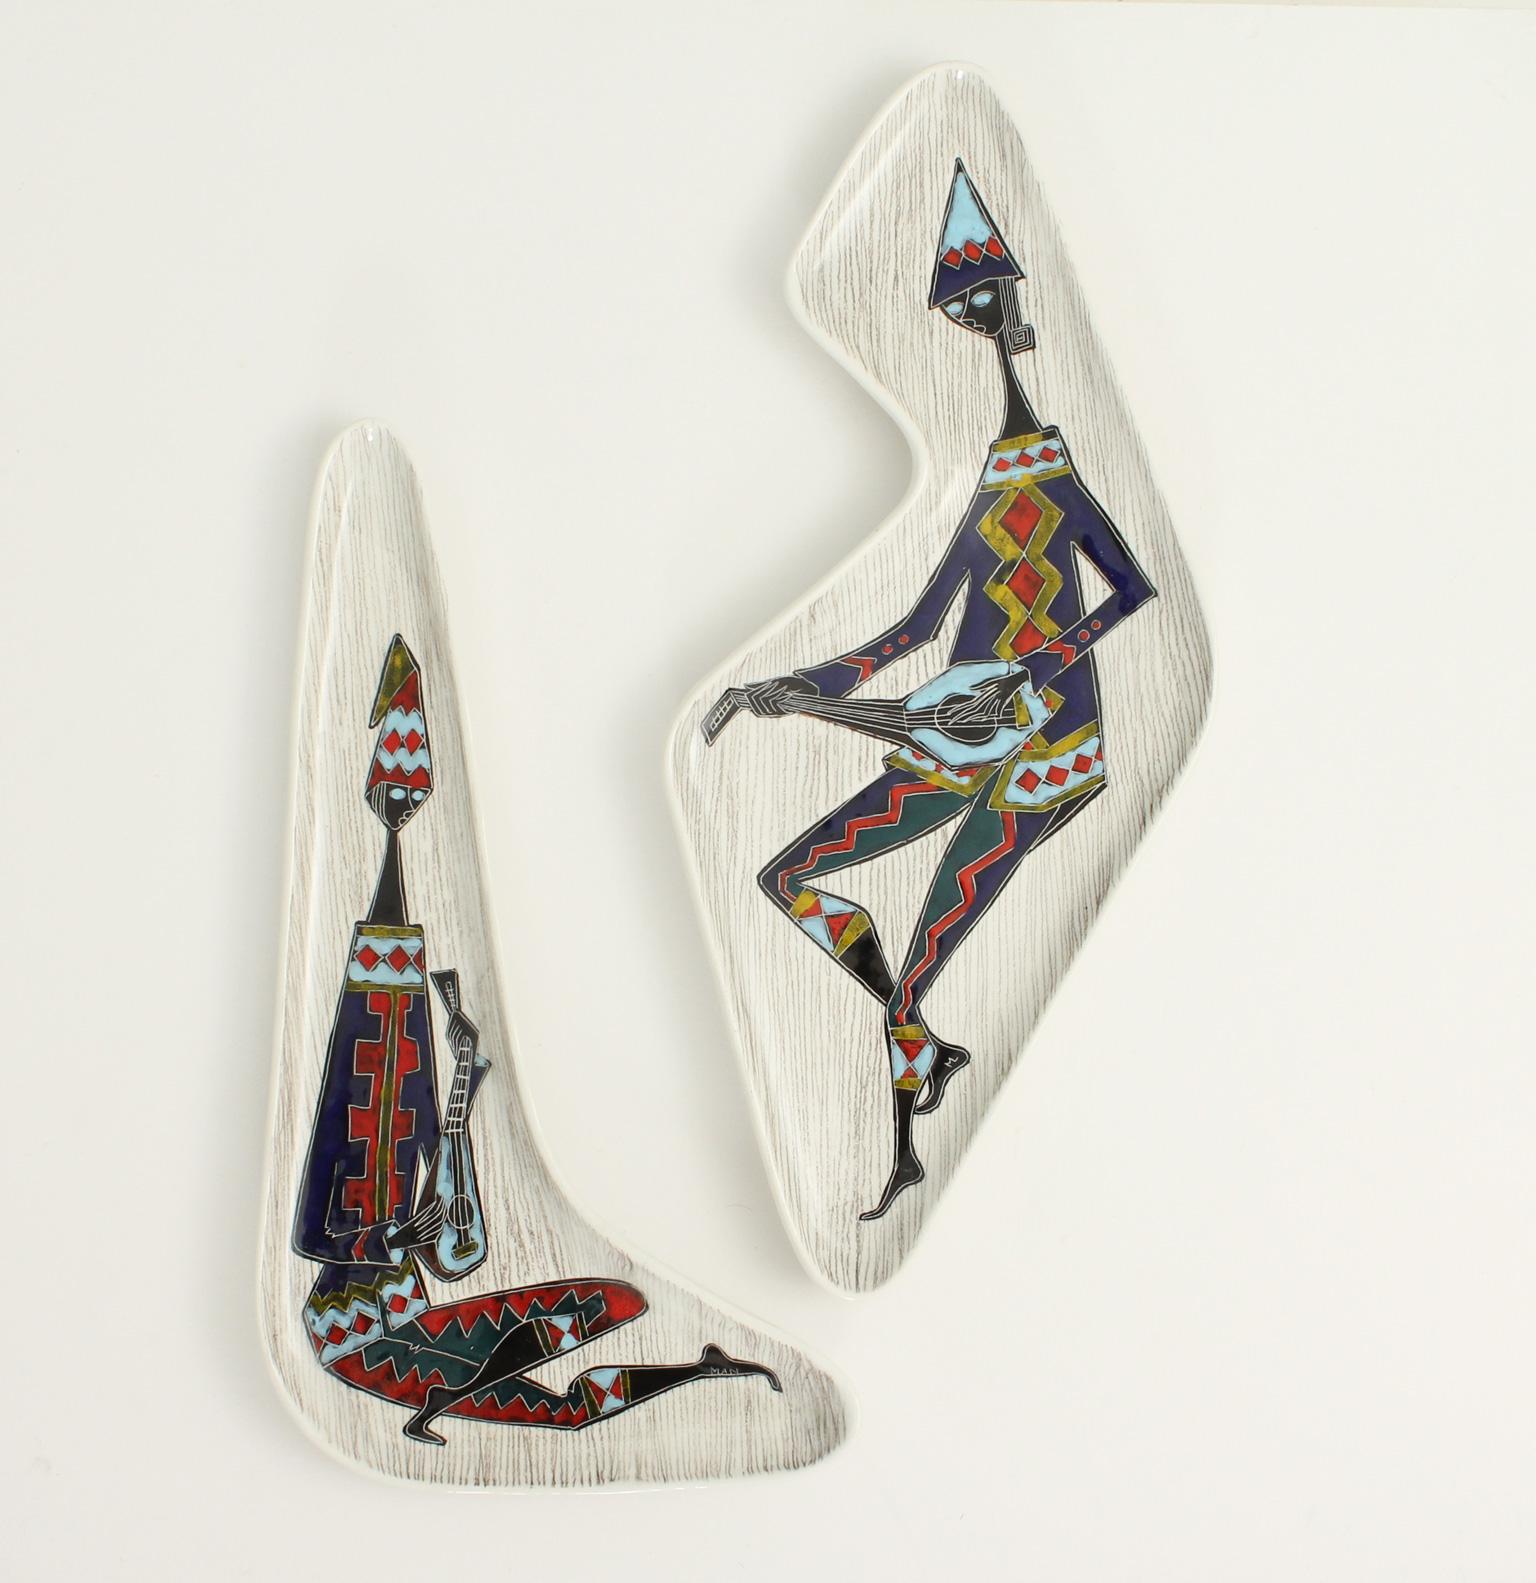 Ein Paar italienisches Geschirr in freier Form aus den 1950er Jahren, signiert Man. Handbemalte glasierte Keramik. Sie können als Schale oder Tablett oder als Wanddekoration verwendet werden.